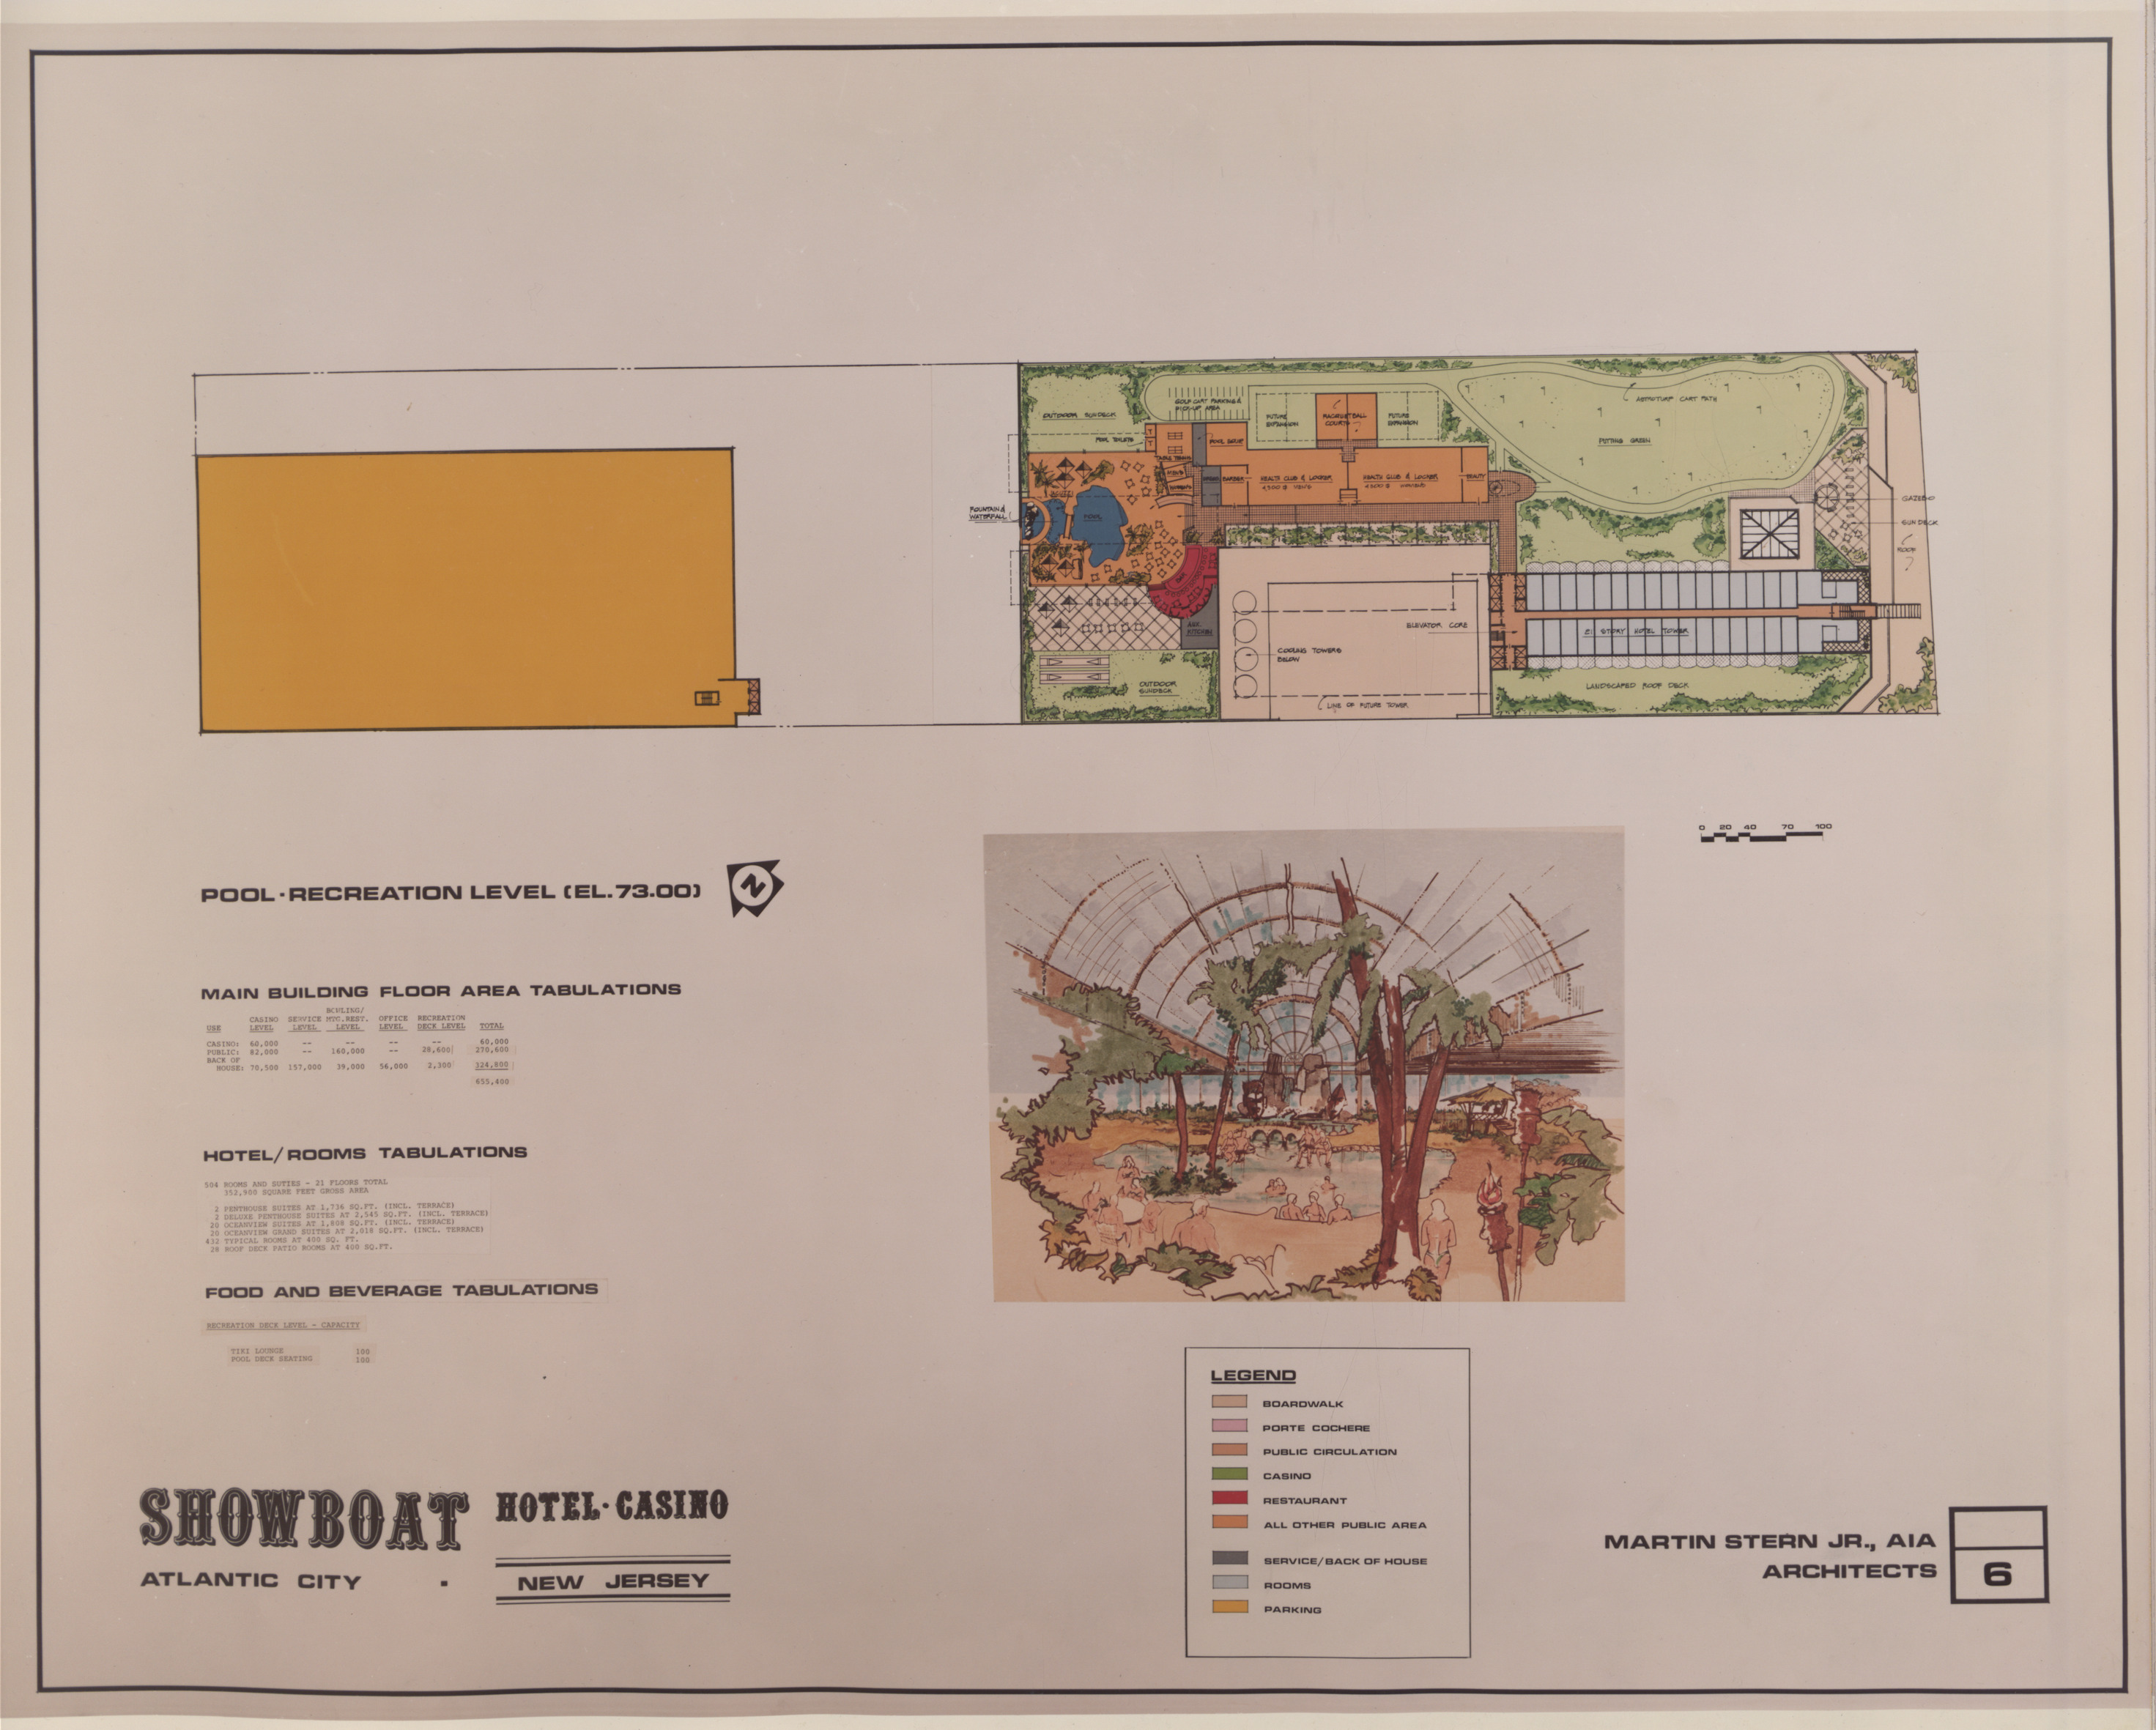 Atlantic City Showboat Hotel Casino Proposal, image 6